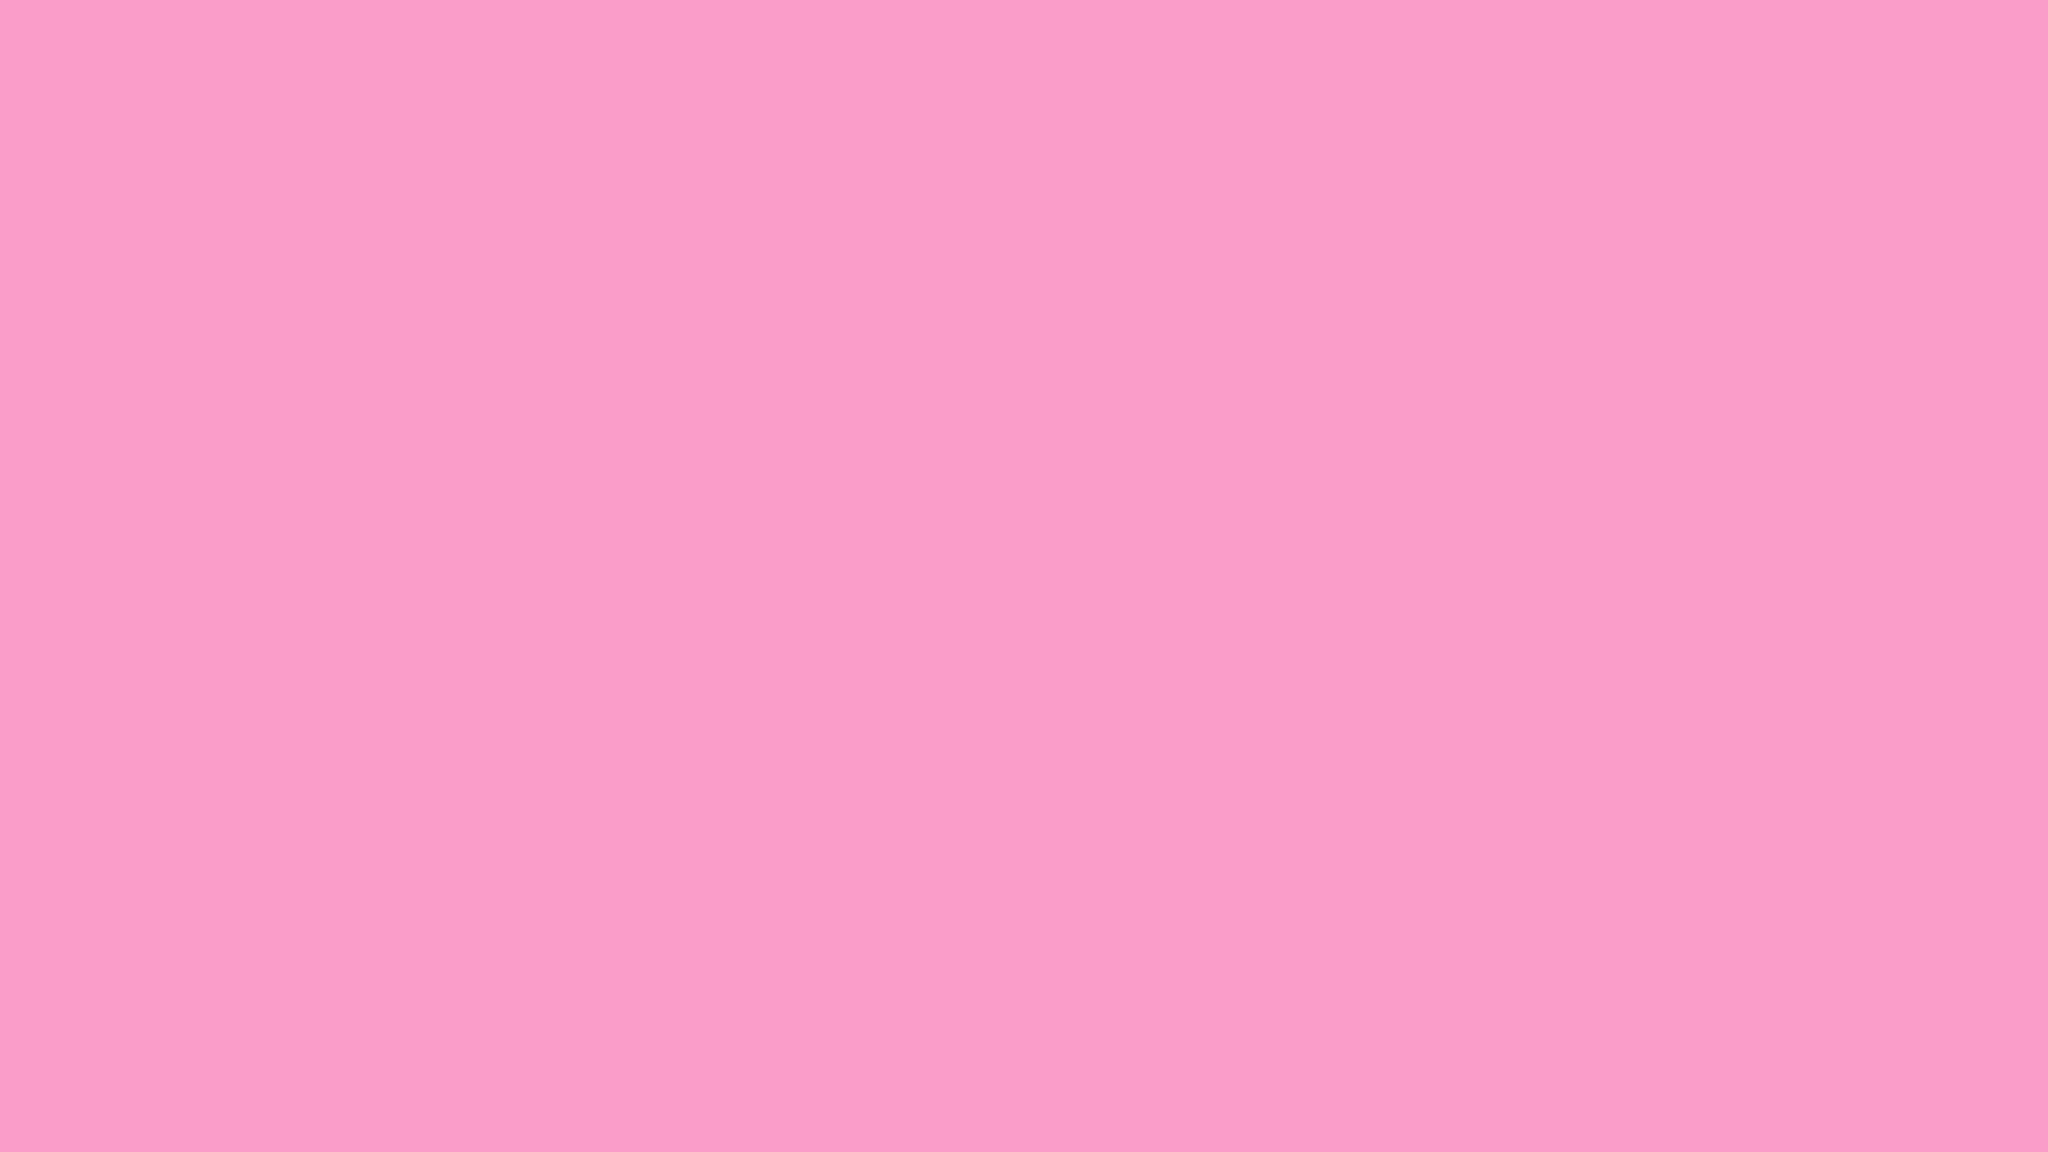 Hình nền màu hồng rực rỡ sẽ làm cho thiết bị của bạn nổi bật và thu hút sự chú ý từ người xung quanh. Với sự kết hợp tinh tế giữa các cấu trúc hình học và màu sắc tươi sáng, pink color wallpaper sẽ mang đến cho bạn một trải nghiệm thẩm mỹ đỉnh cao. Hãy xem hình ảnh để cảm nhận được sức hút của nó.